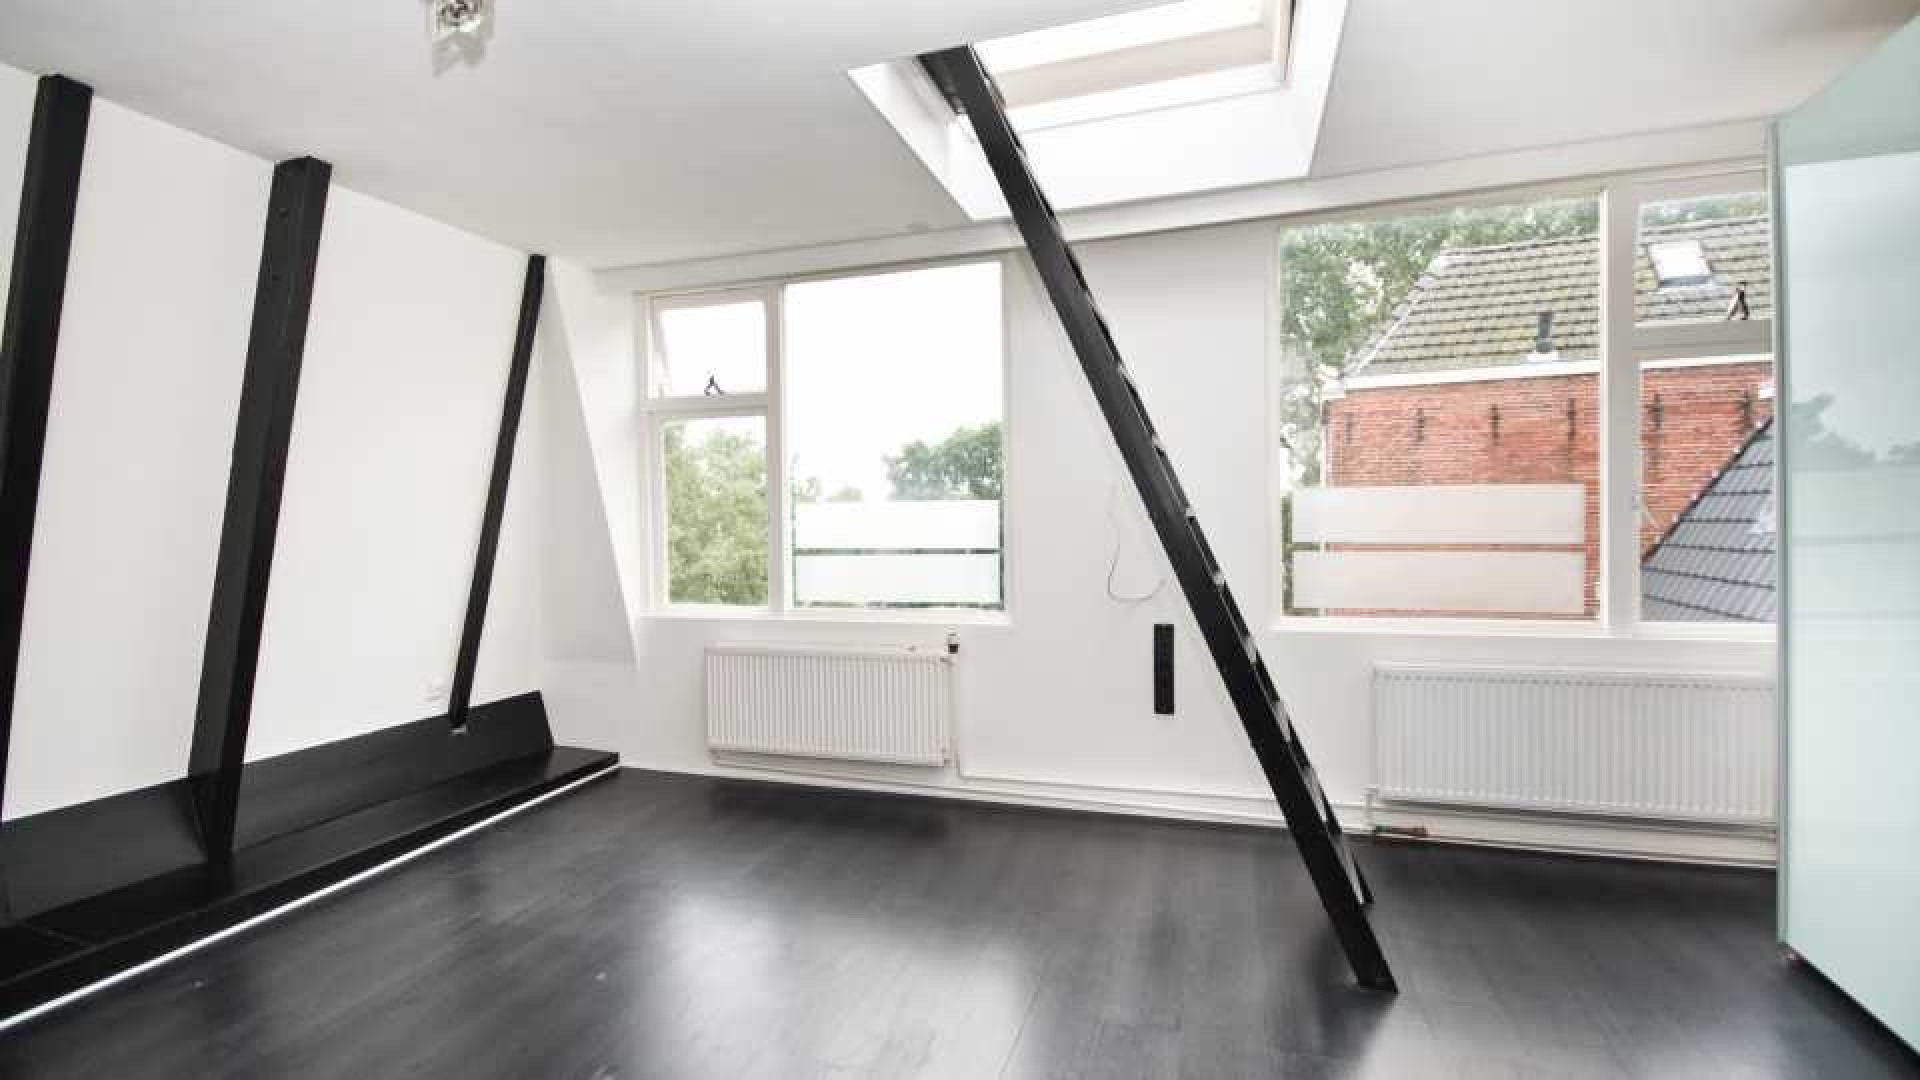 Victoria Koblenko en haar vriend Levchenko verkopen hun dubbel bovenhuis in Groningen. Zie foto's